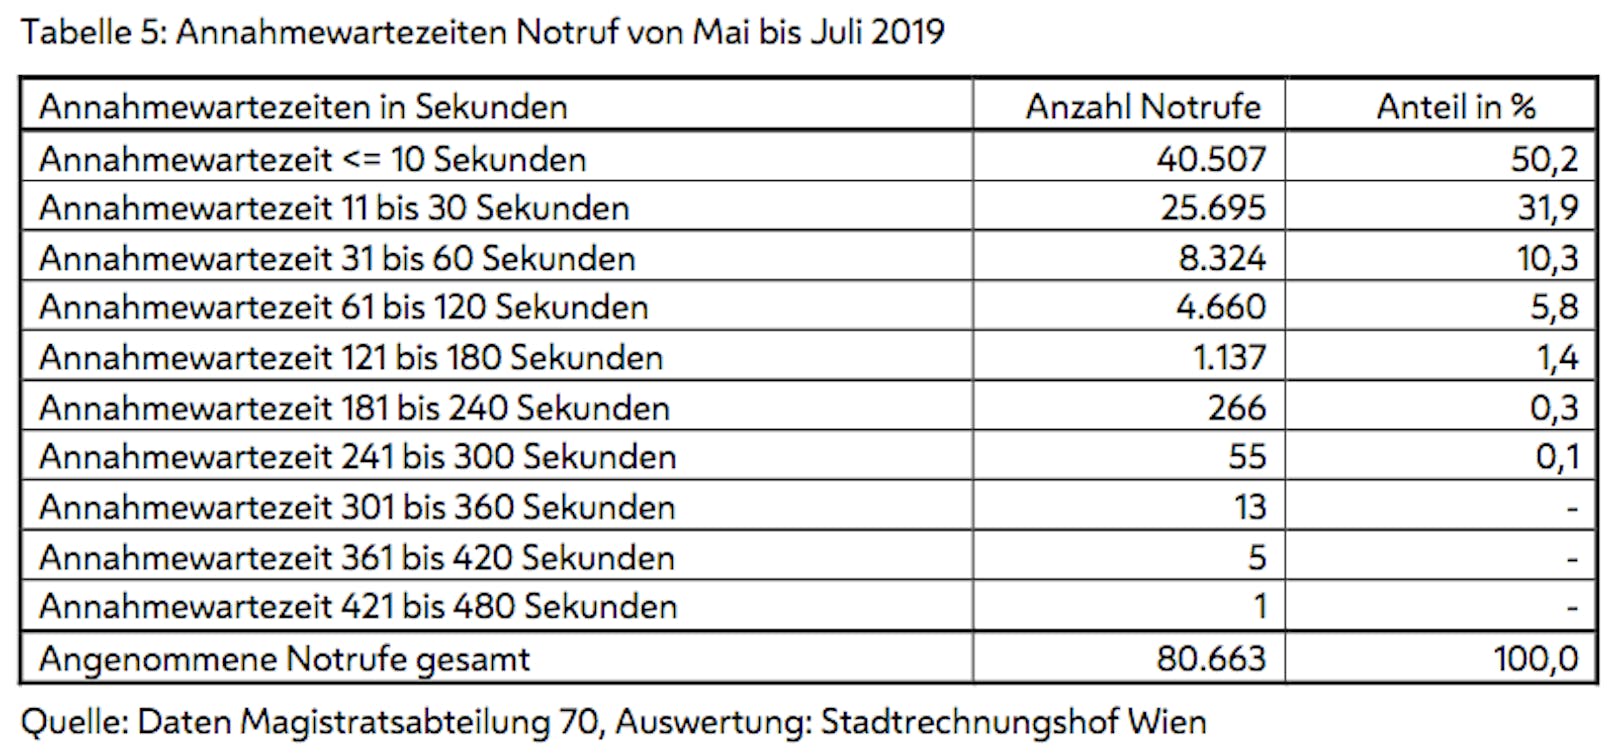 Annahmewartezeiten von Mai bis Juli 2019